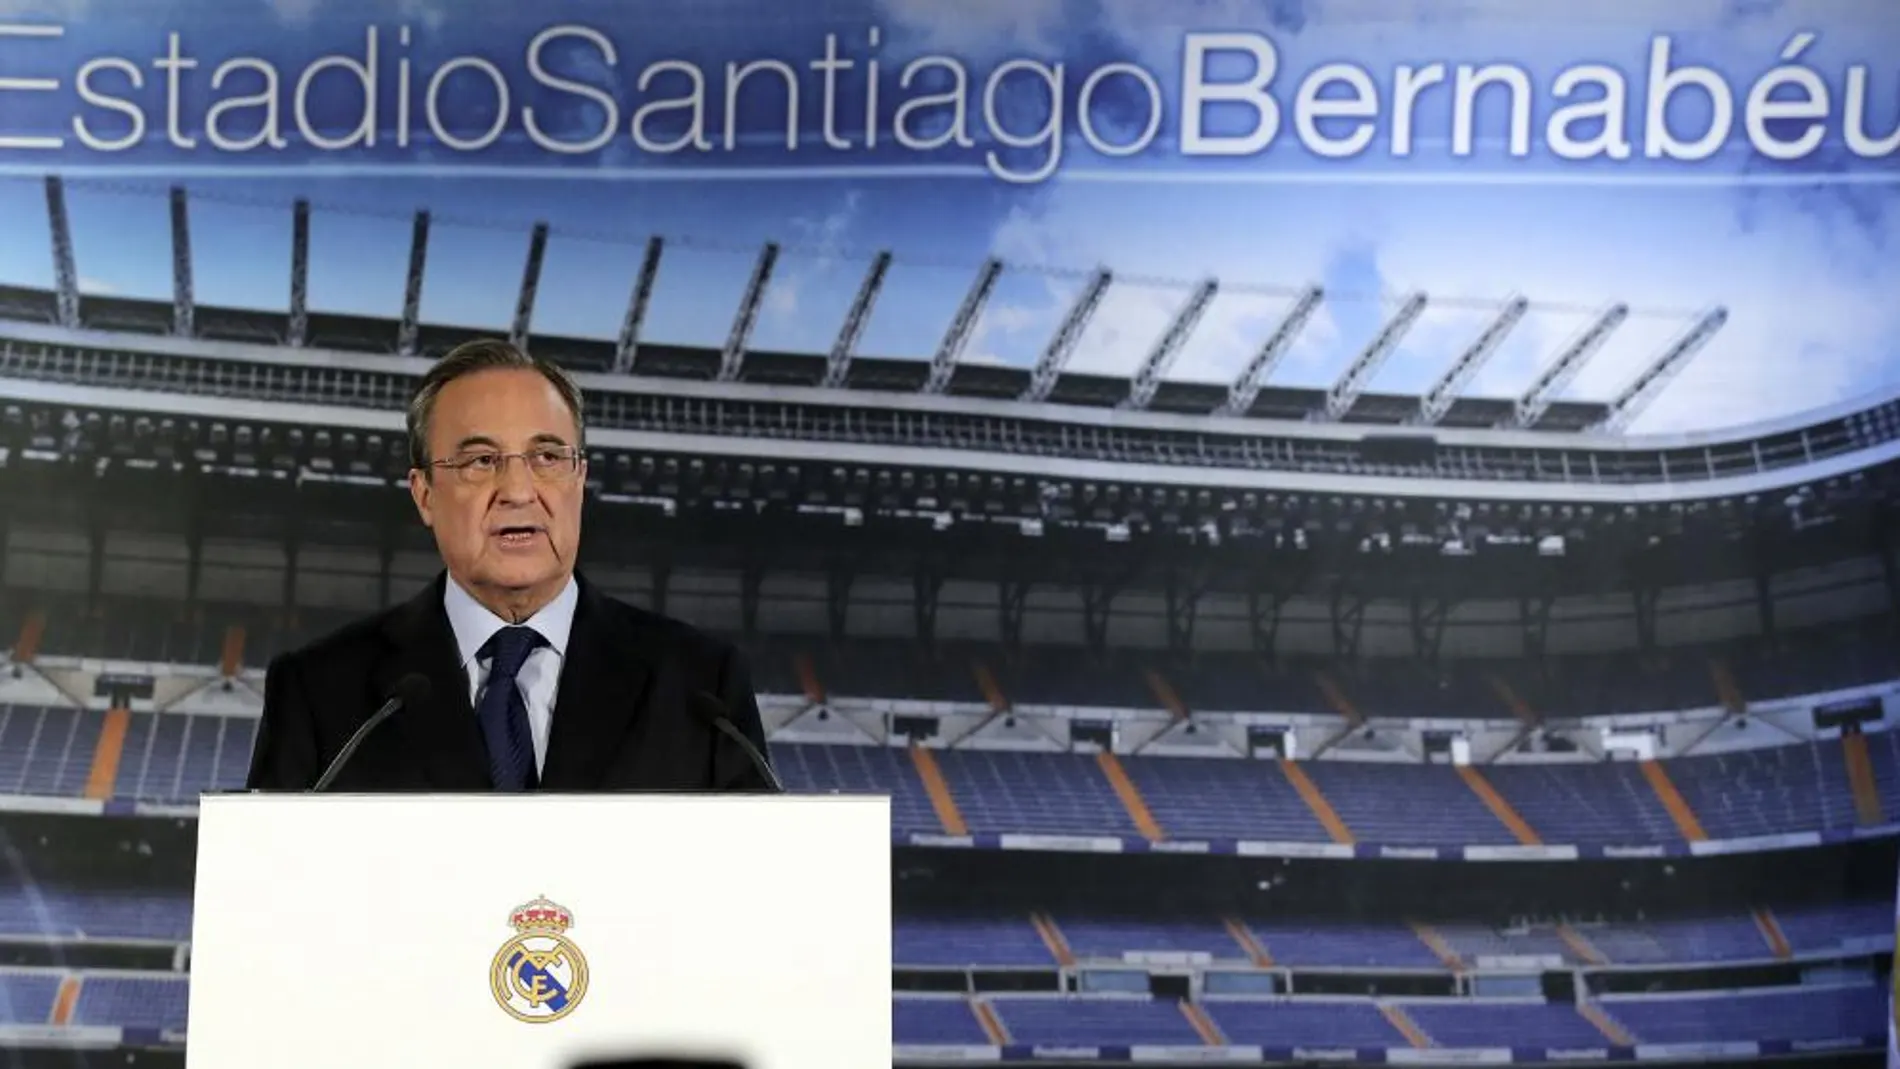 El presidente del Real Madrid, Florentino Pérez, durante la rueda de prensa ofrecida a la conclusión de la junta directiva del club en el estadio Santiago Bernabéu